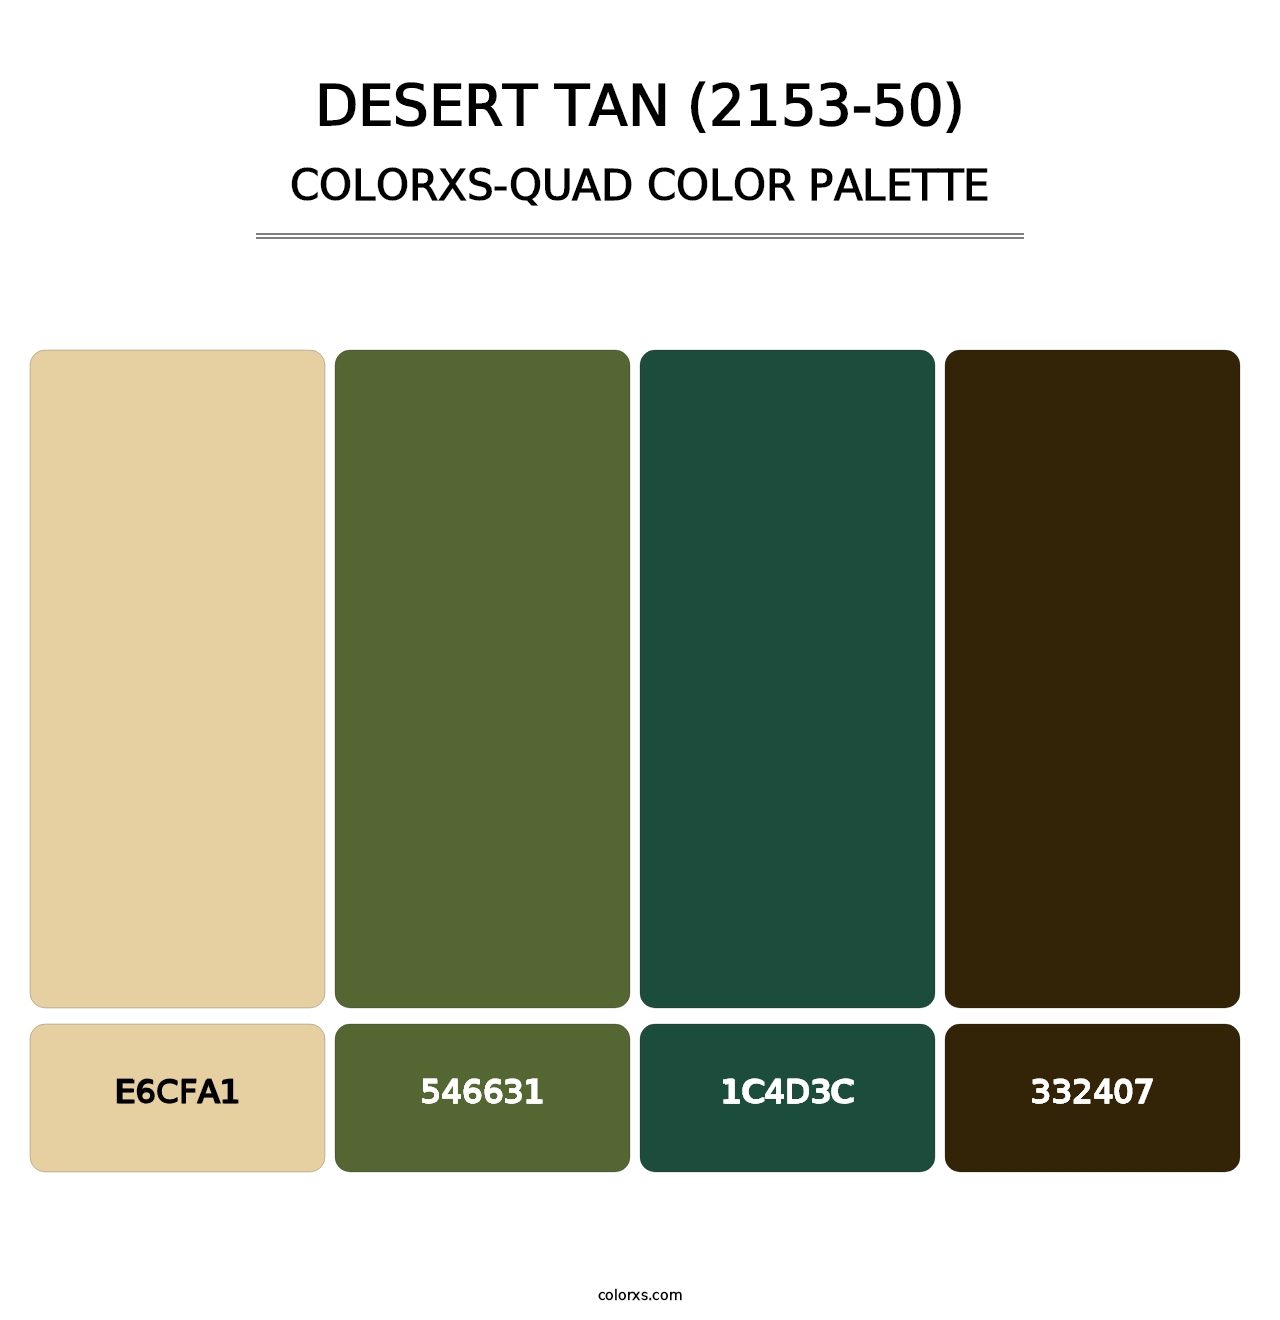 Desert Tan (2153-50) - Colorxs Quad Palette